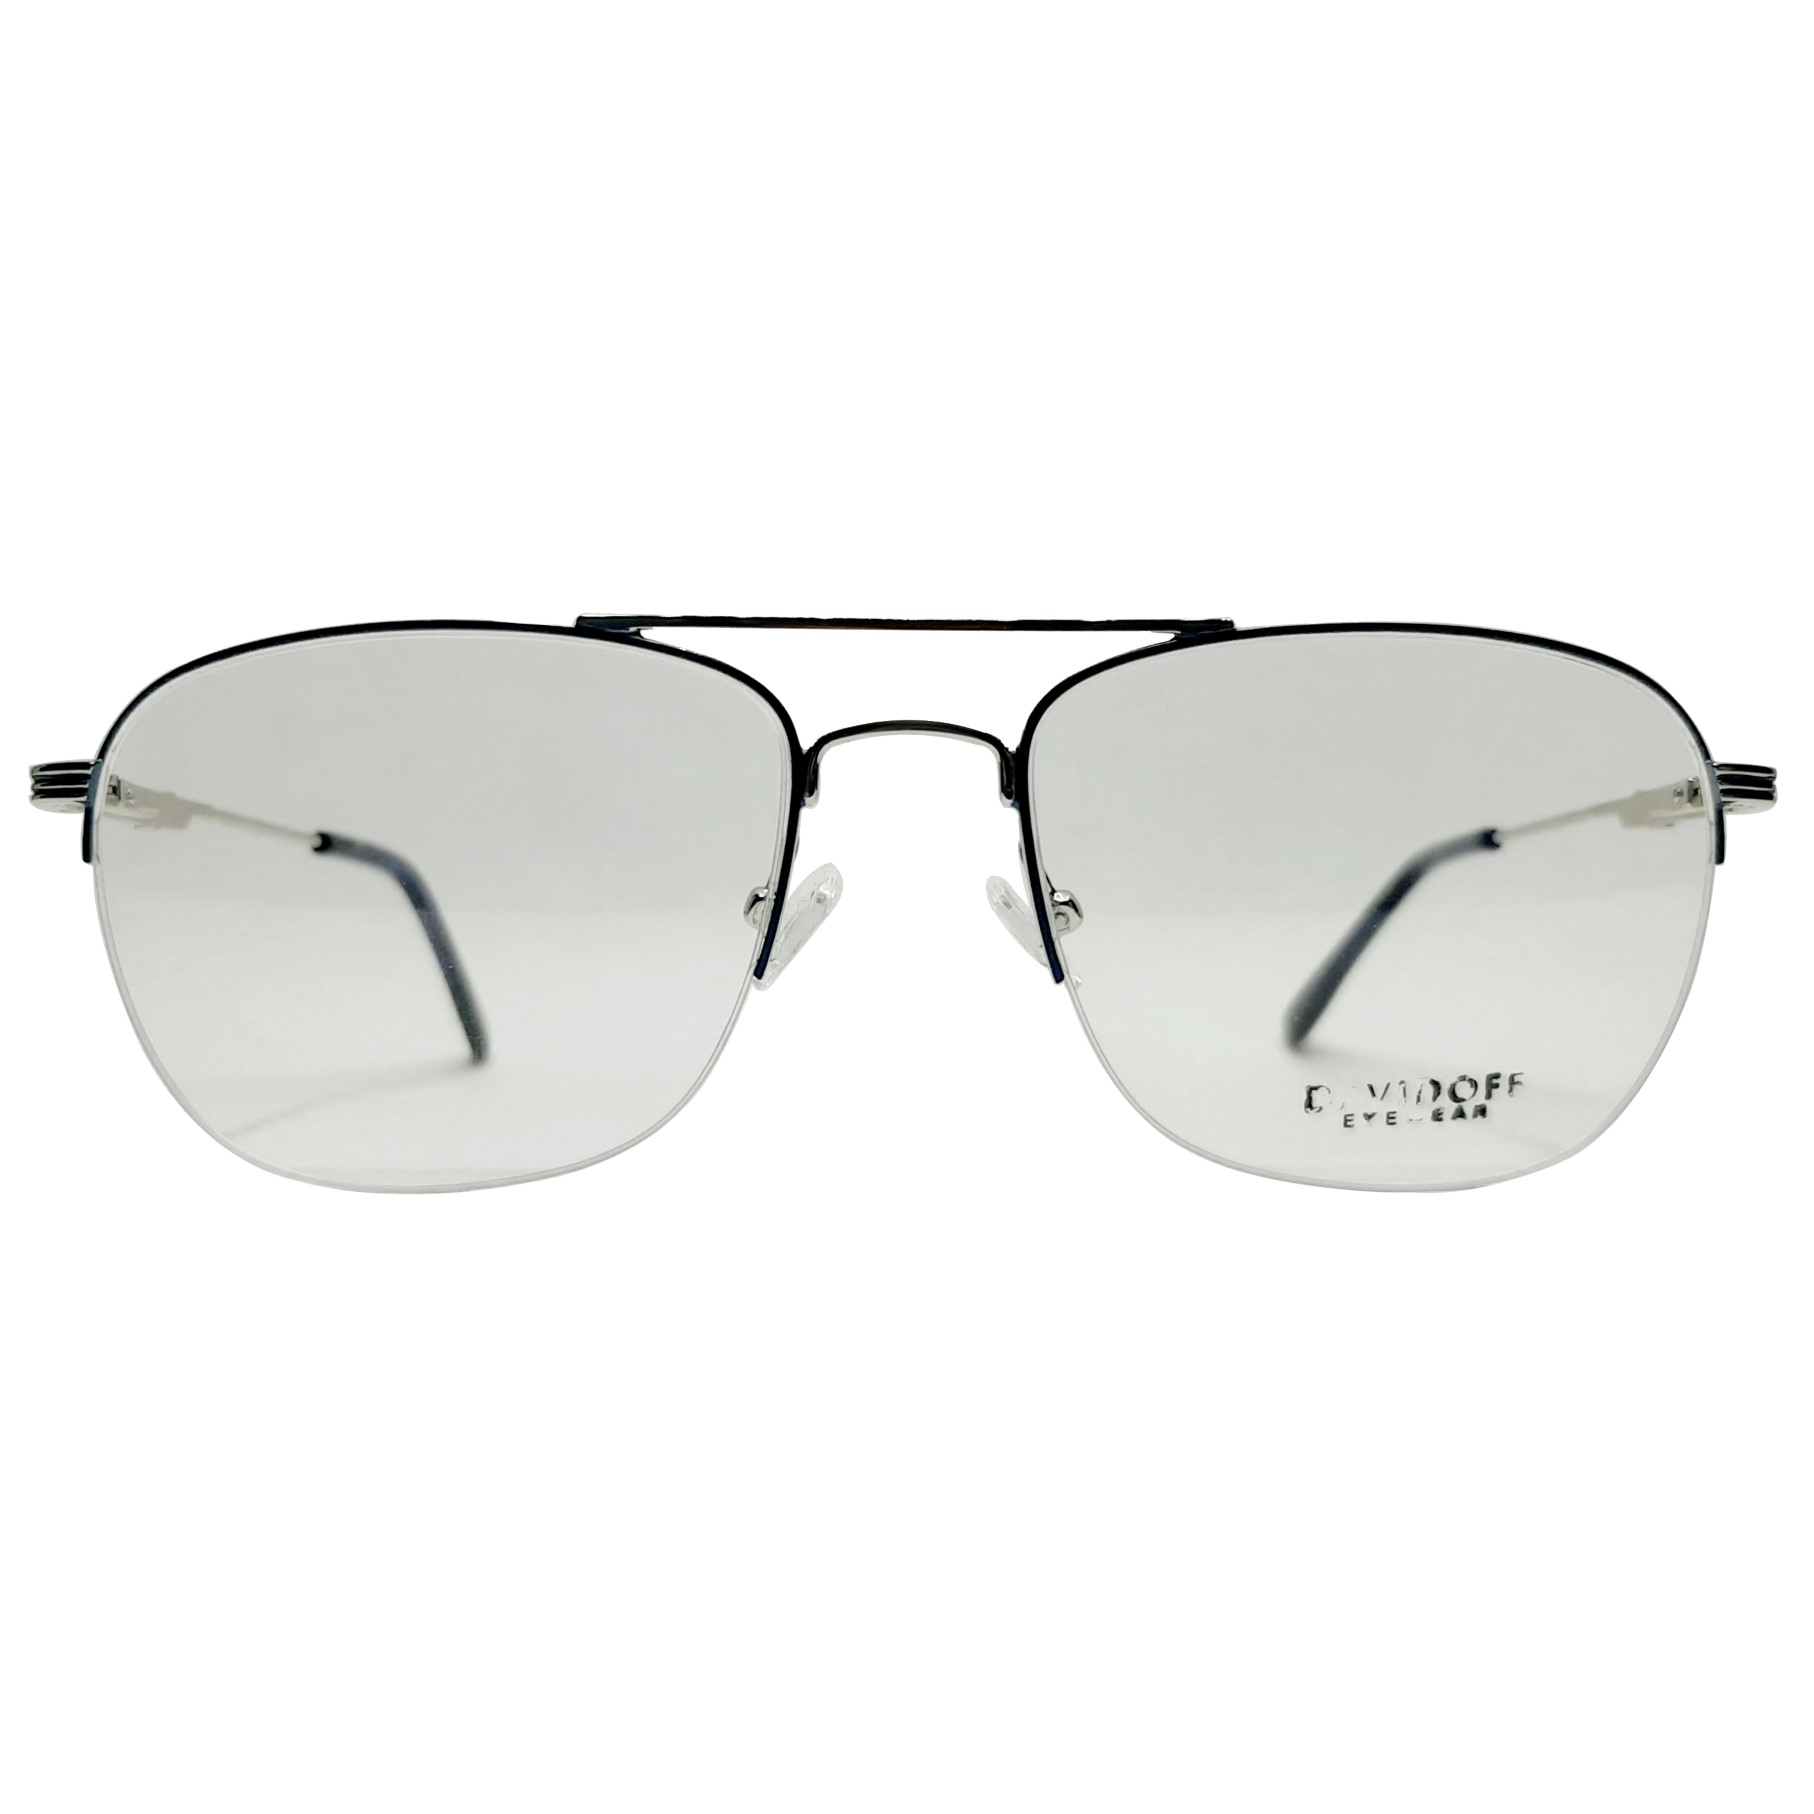 فریم عینک طبی داویدف مدل YJ0213c4